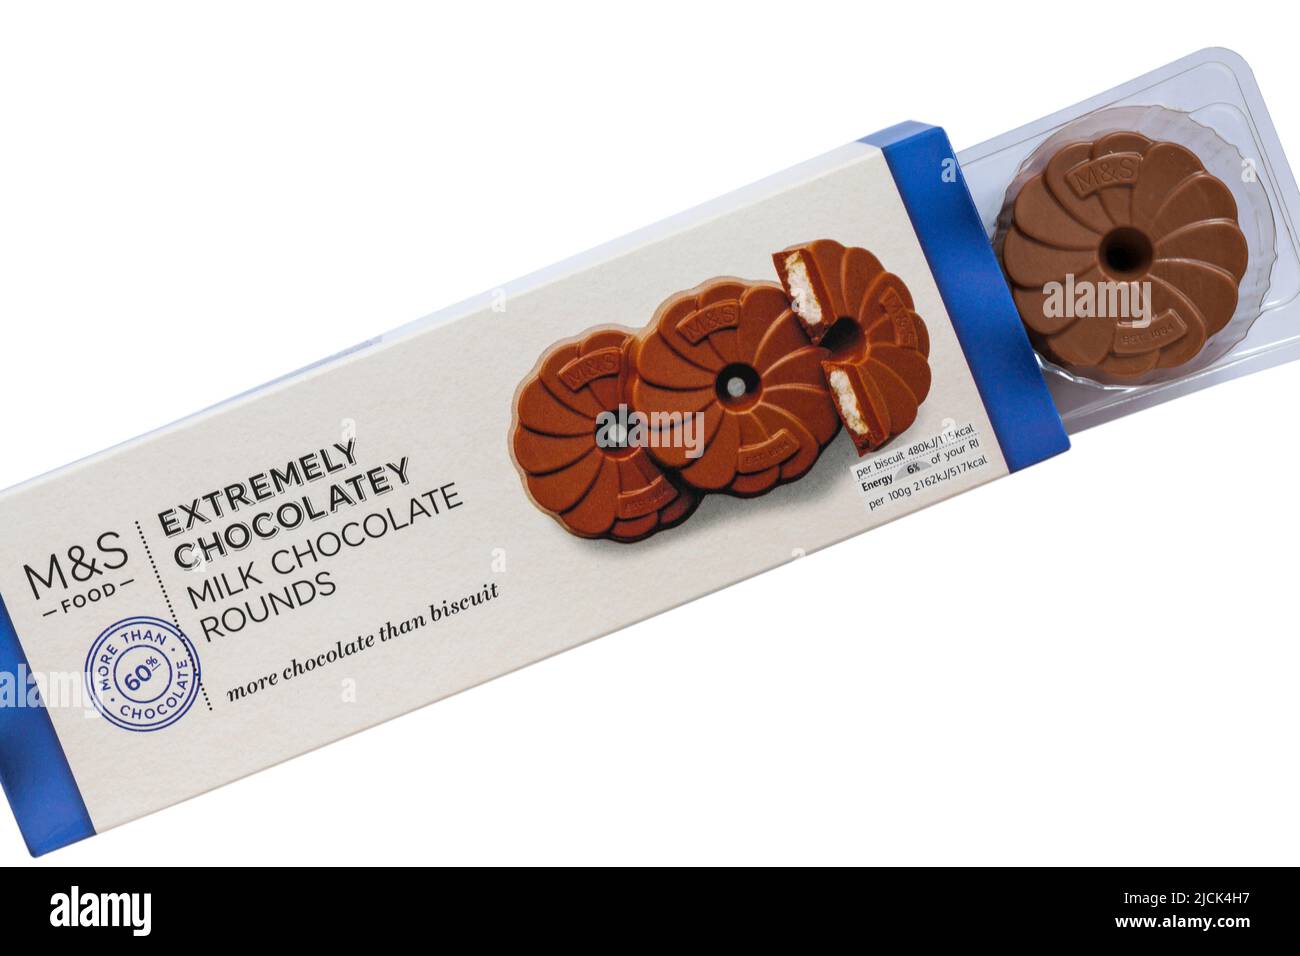 Packung mit extrem schokoladiger Milch Schokolade rundet Kekse von M&S auf, um Inhalte auf weißem Hintergrund anzuzeigen Stockfoto